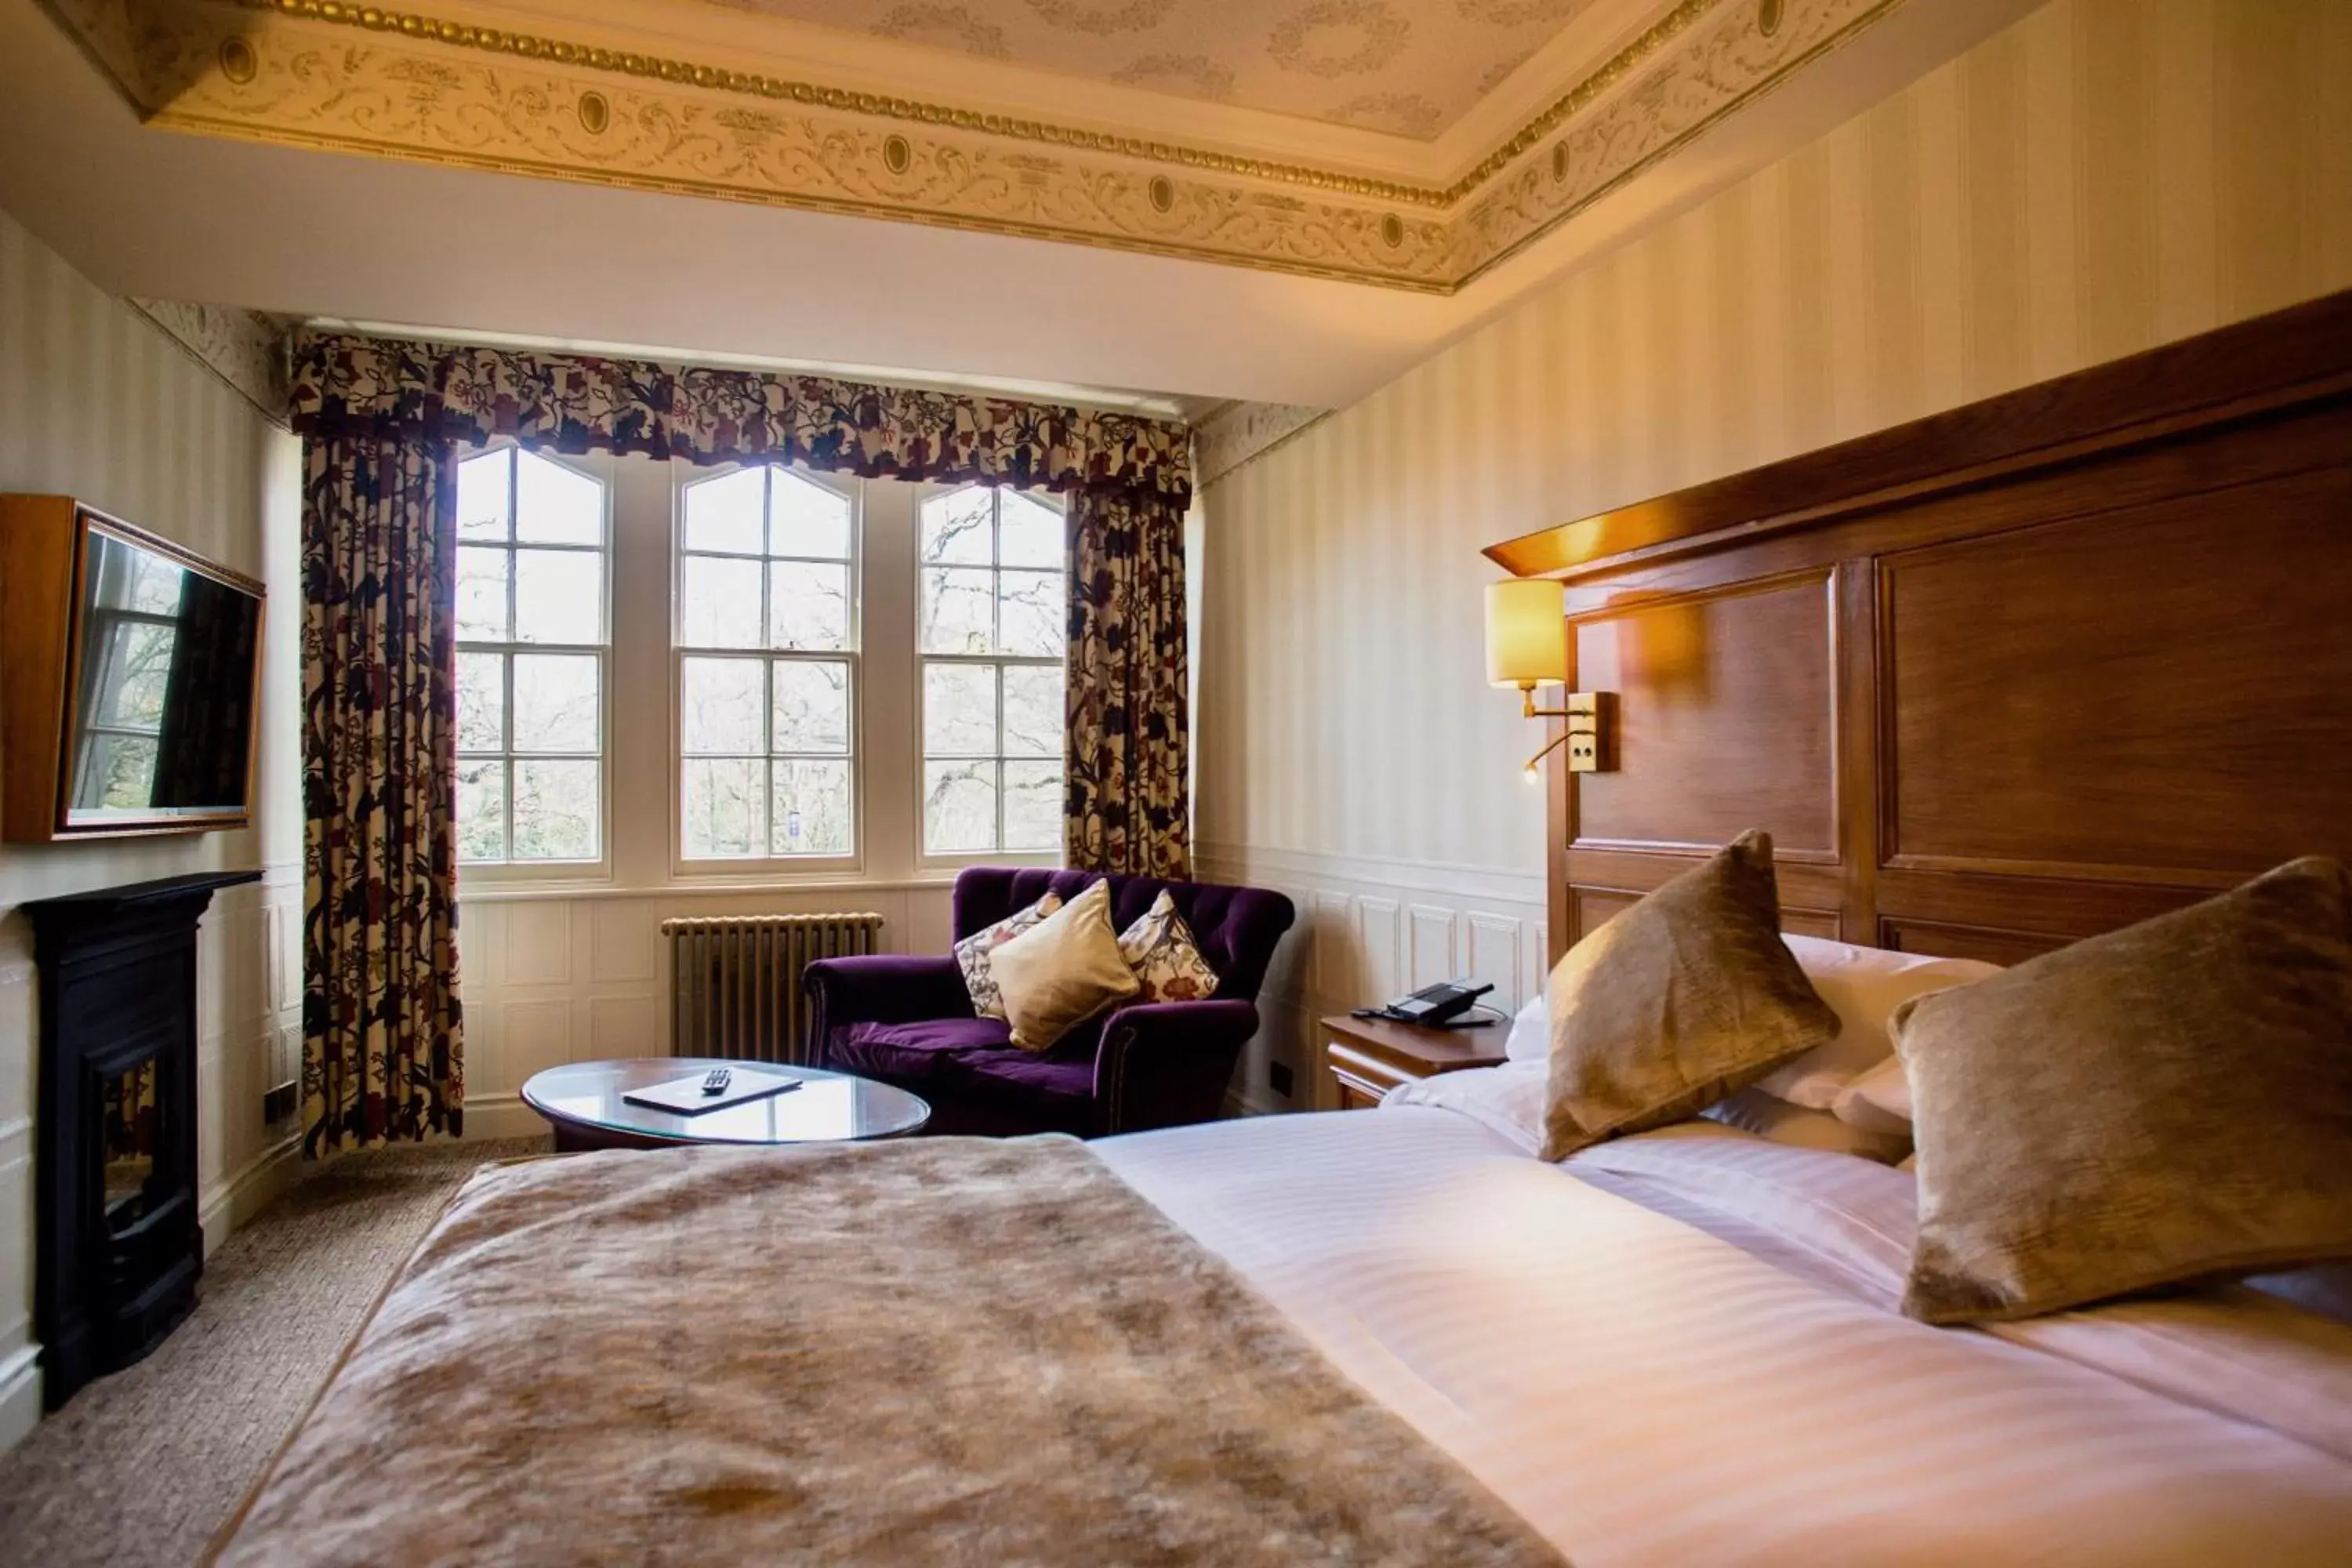 Bed in Royal Oak Hotel